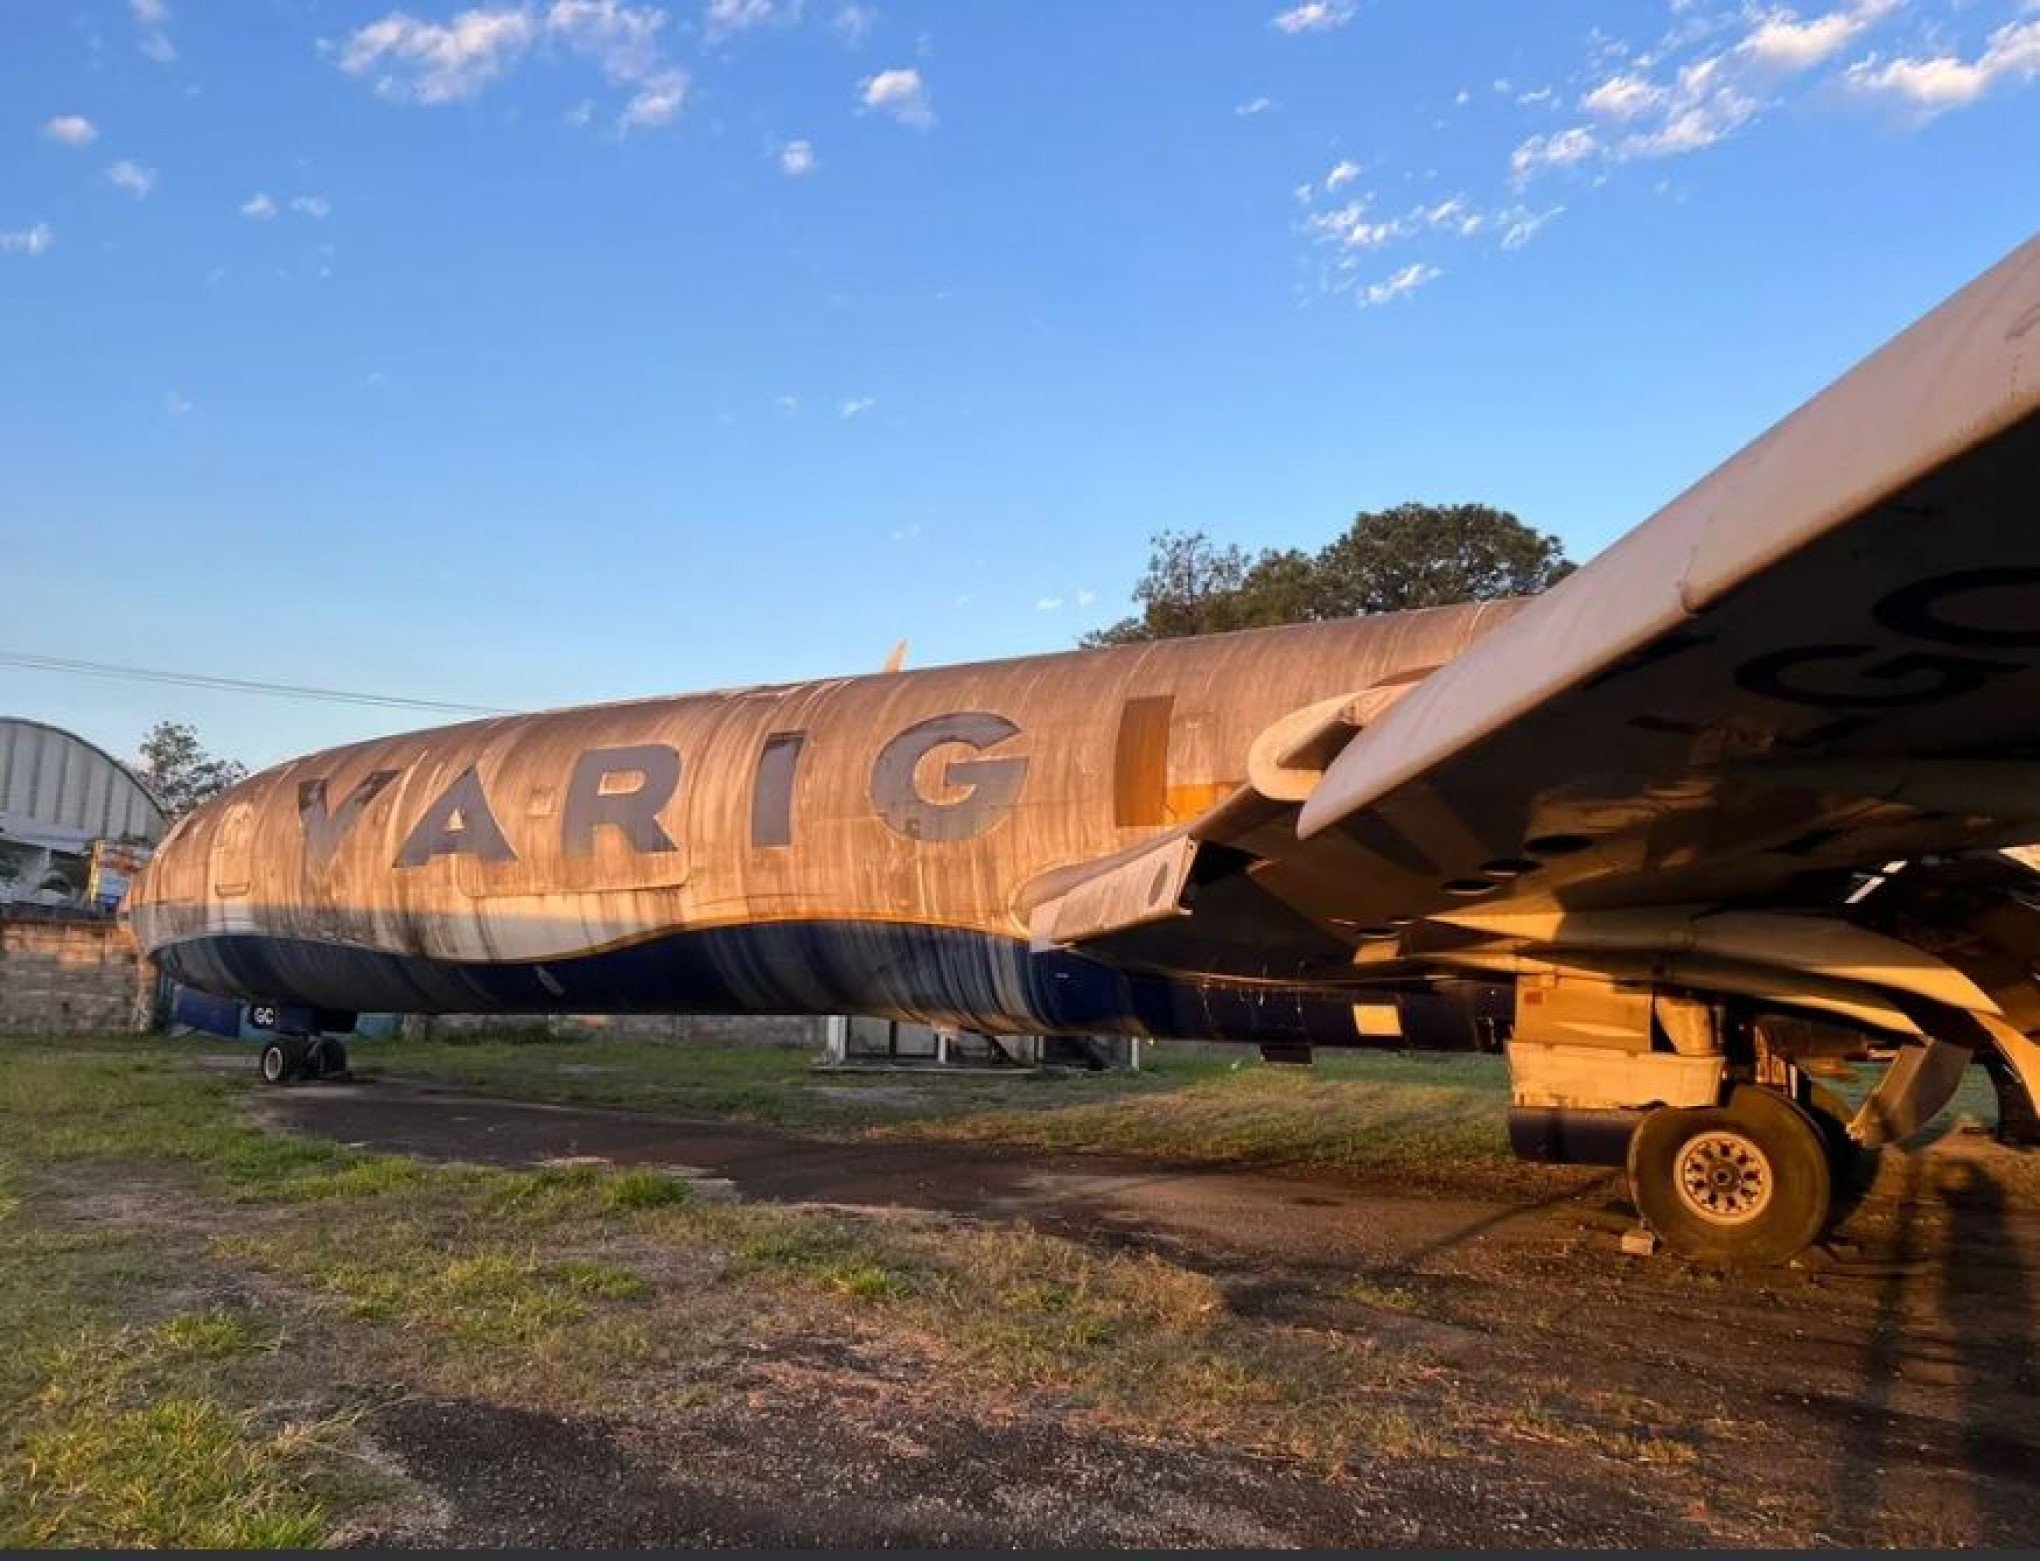 Conheça o Boeing 727, avião que ficou esquecido por mais de uma década em São Paulo